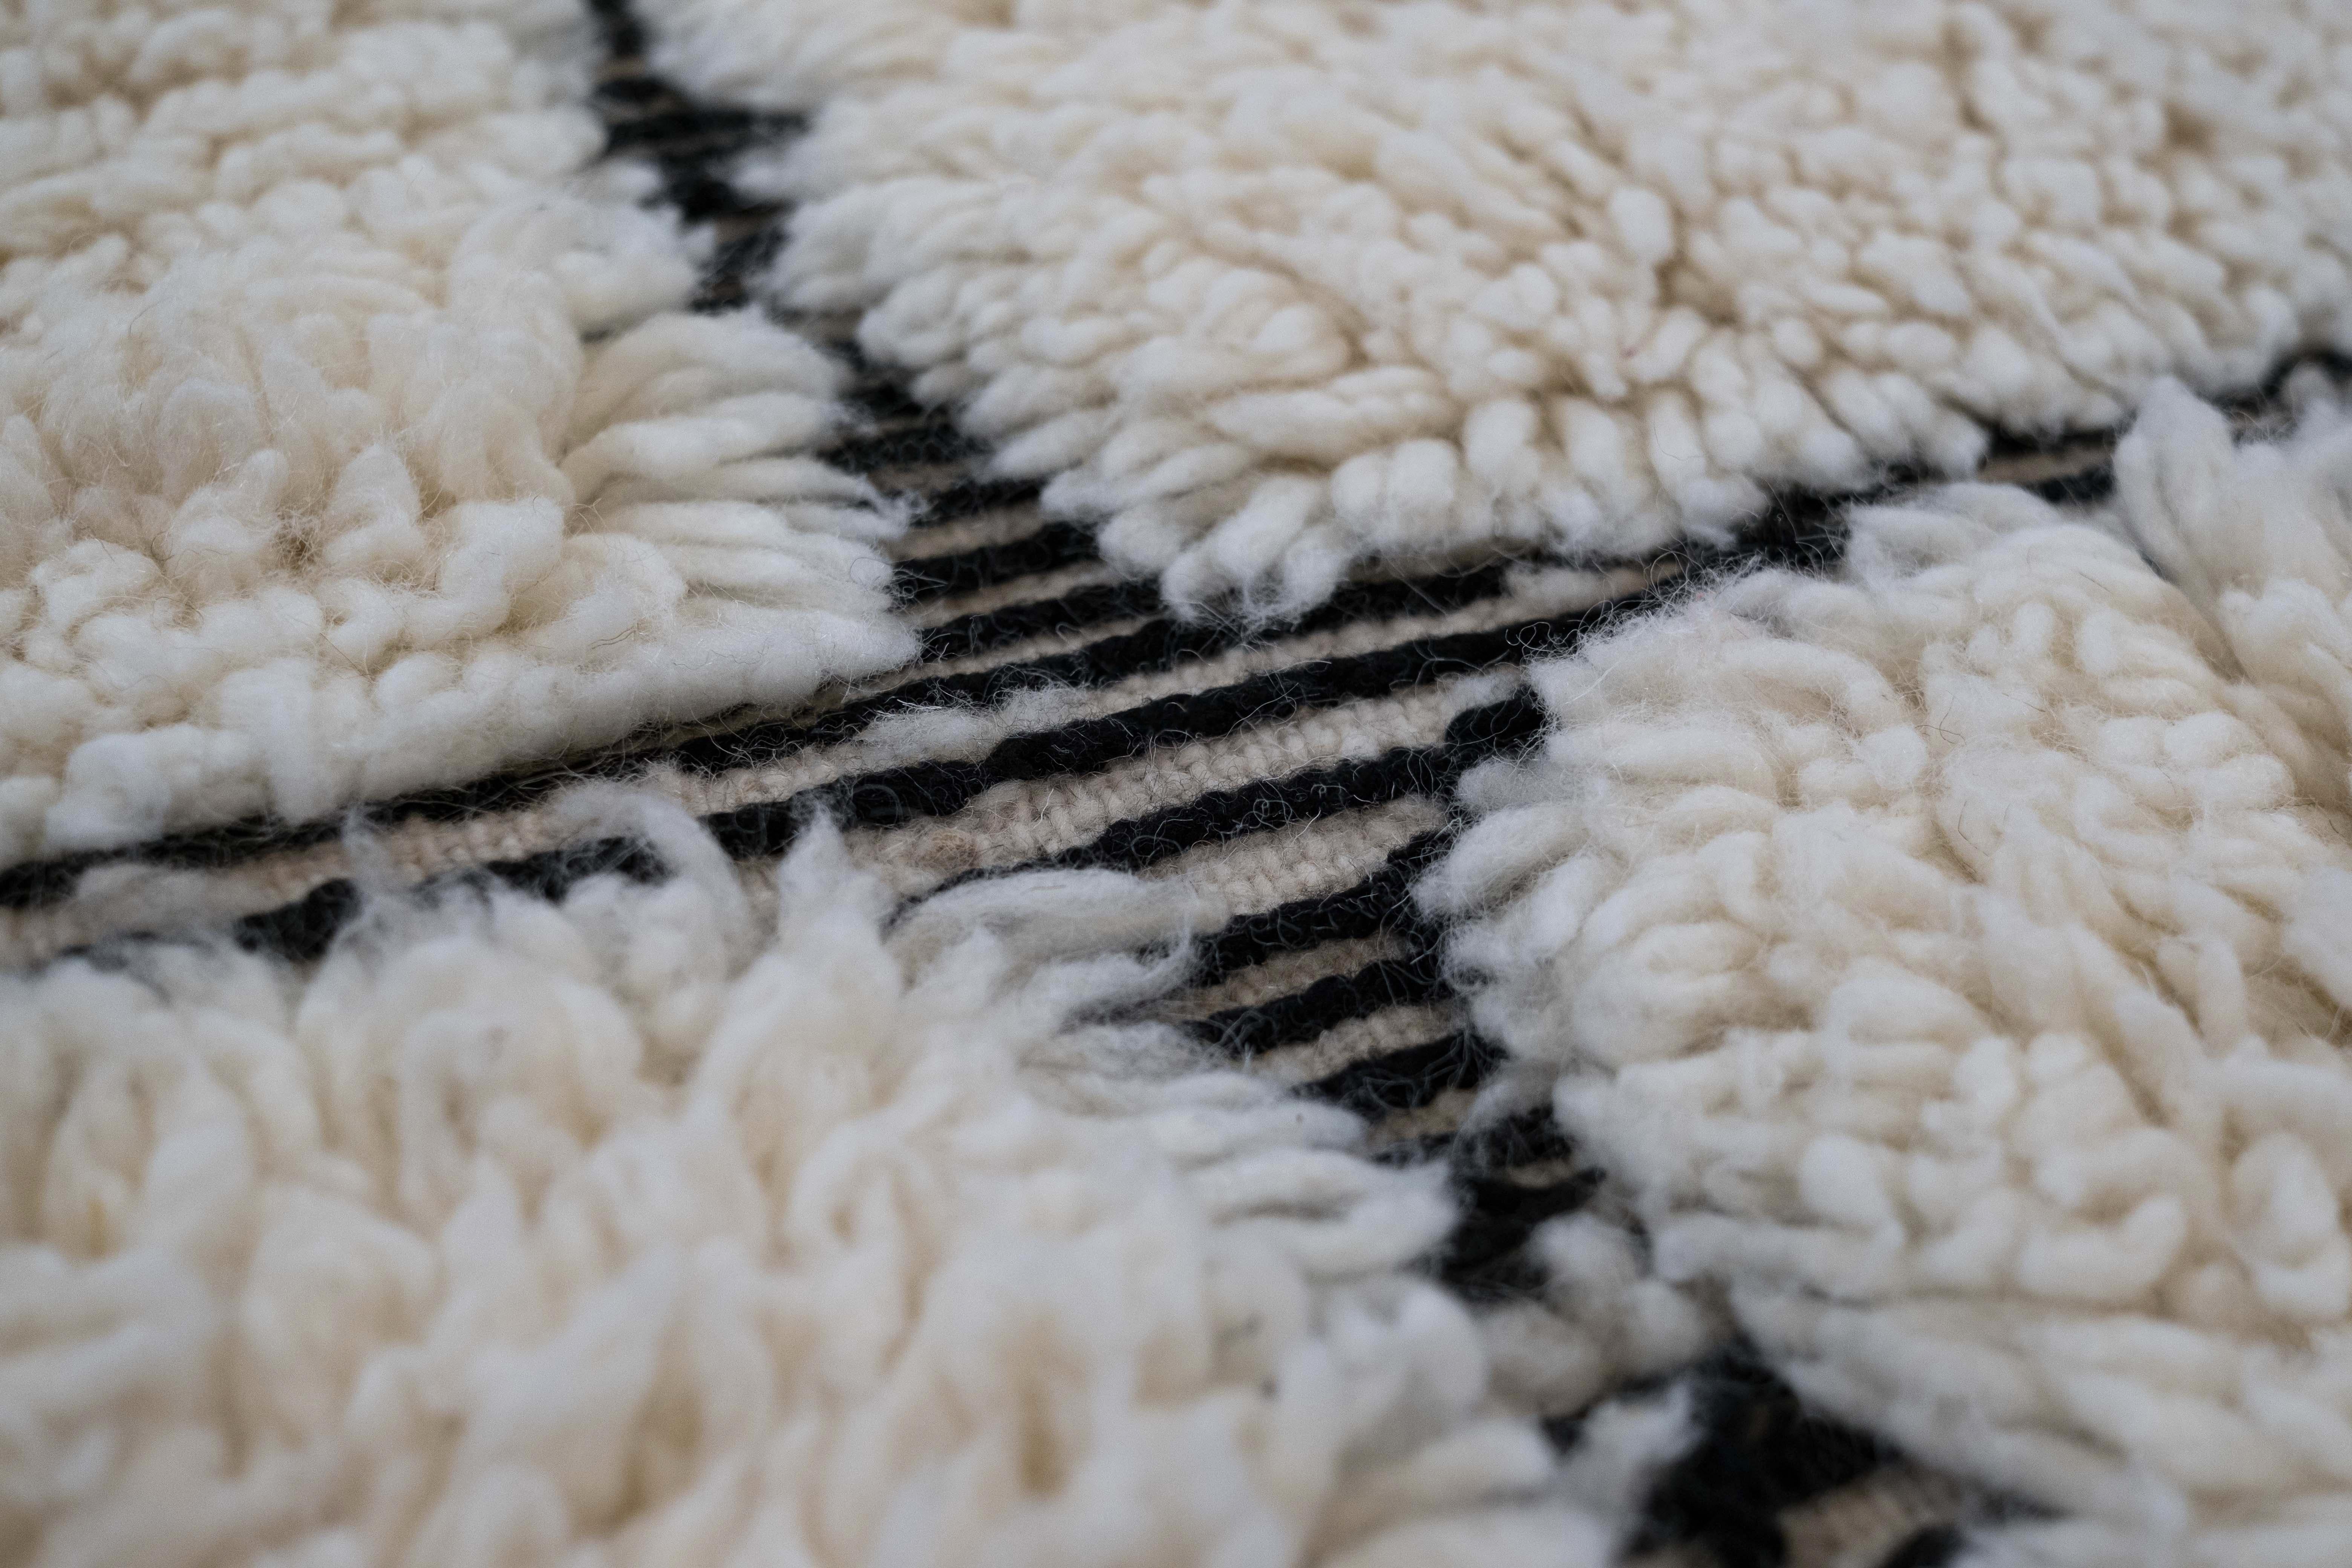 Das Garn aus 100 % Wolle wird nicht gefärbt, so dass nur der schwarze Farbton des Fadens übrig bleibt, der den Teppich mit der für Nomadenstämme typischen Symbolik bereichert. Die Weichheit der unbehandelten Wolle hat sie im Laufe der Jahrhunderte